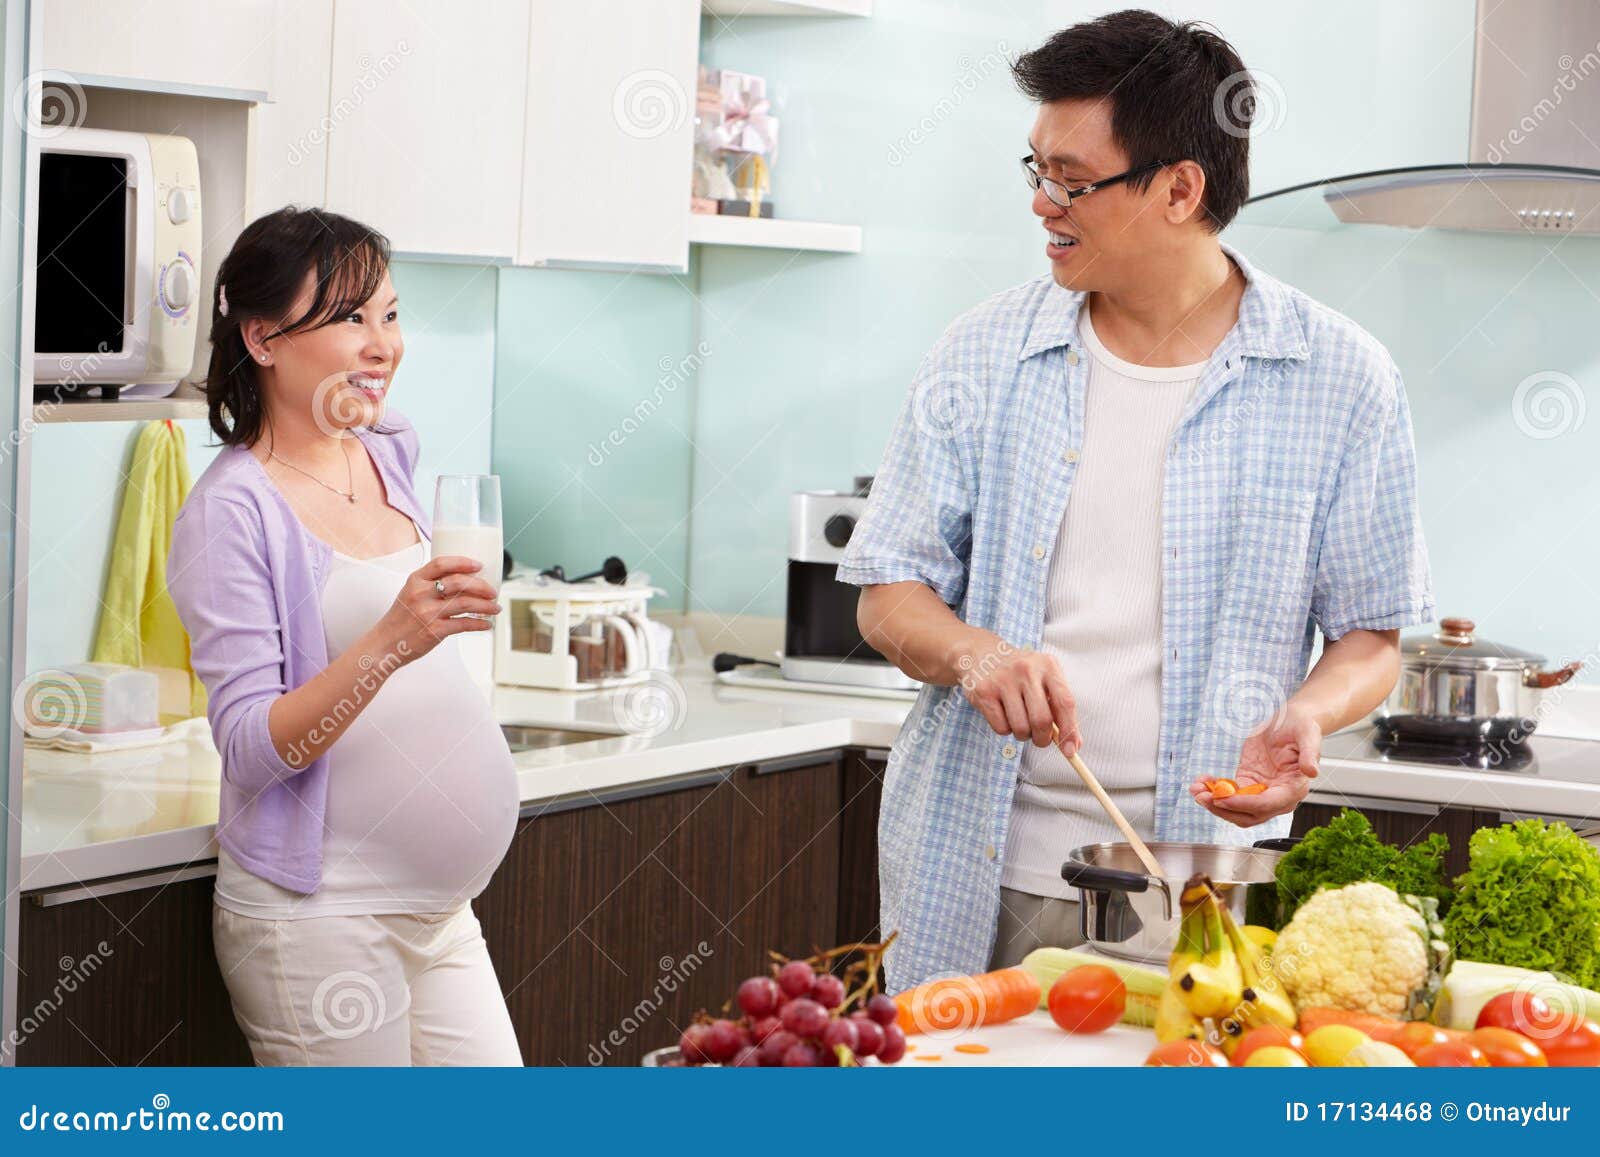 Беременную жену друзьям видео. Муж с беременной женой на кухне. Молоко жены.